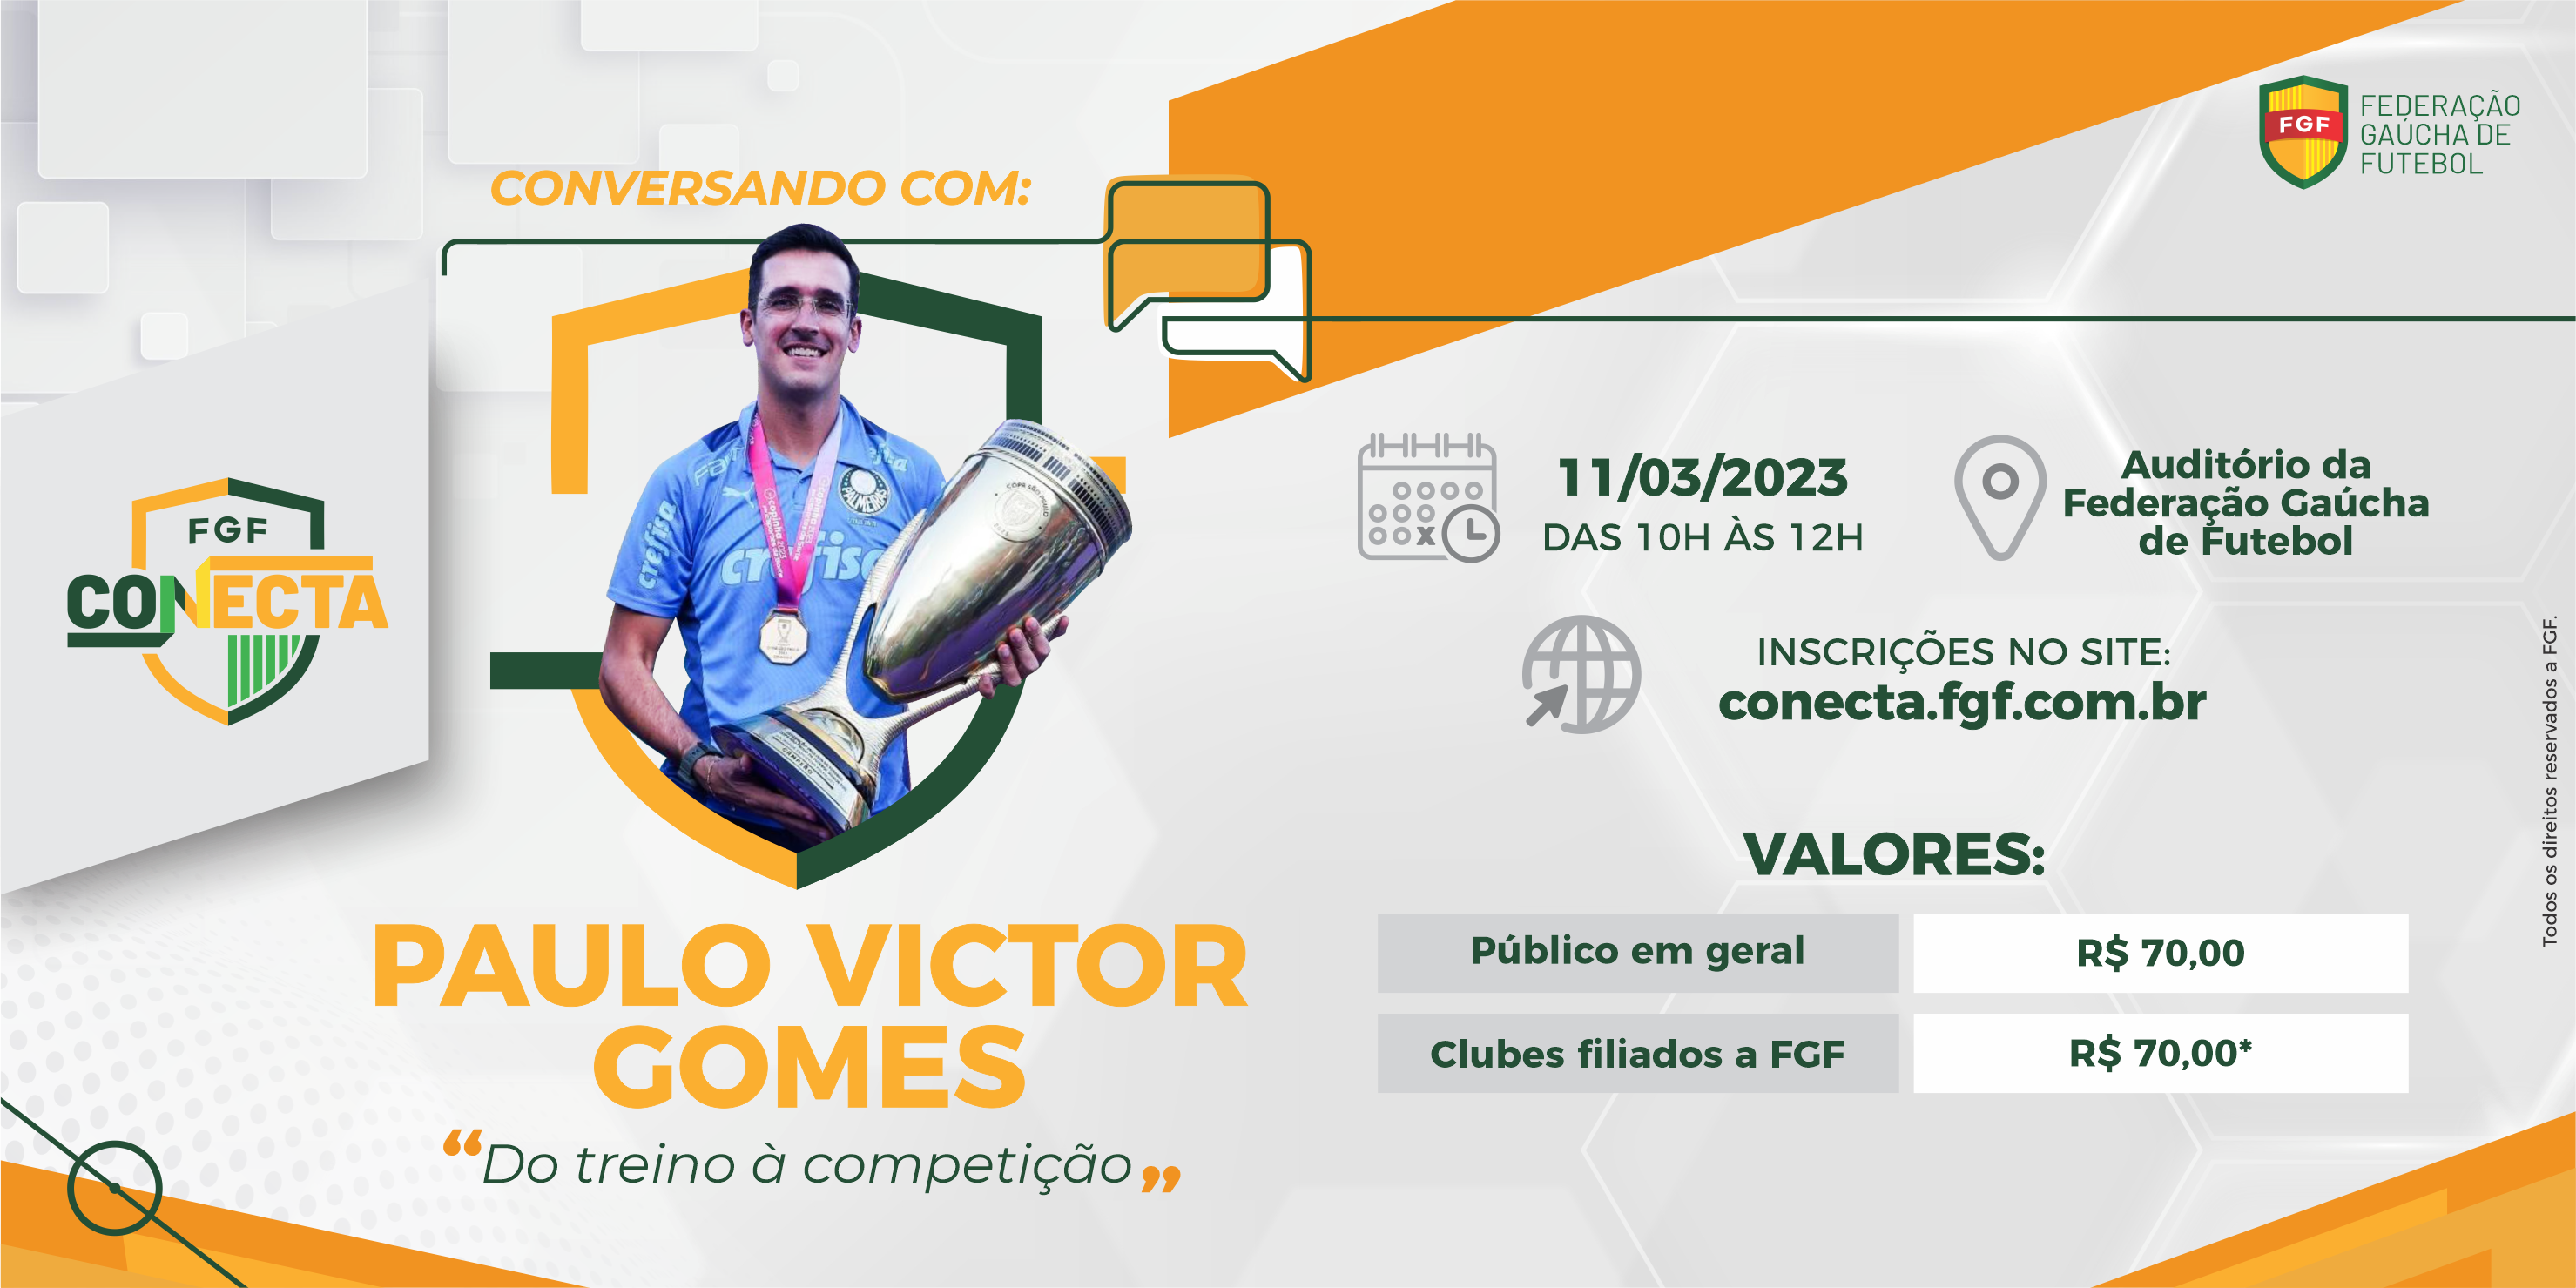 FGF Conecta promove primeiro evento de 2023 com o treinador Paulo Victor Gomes